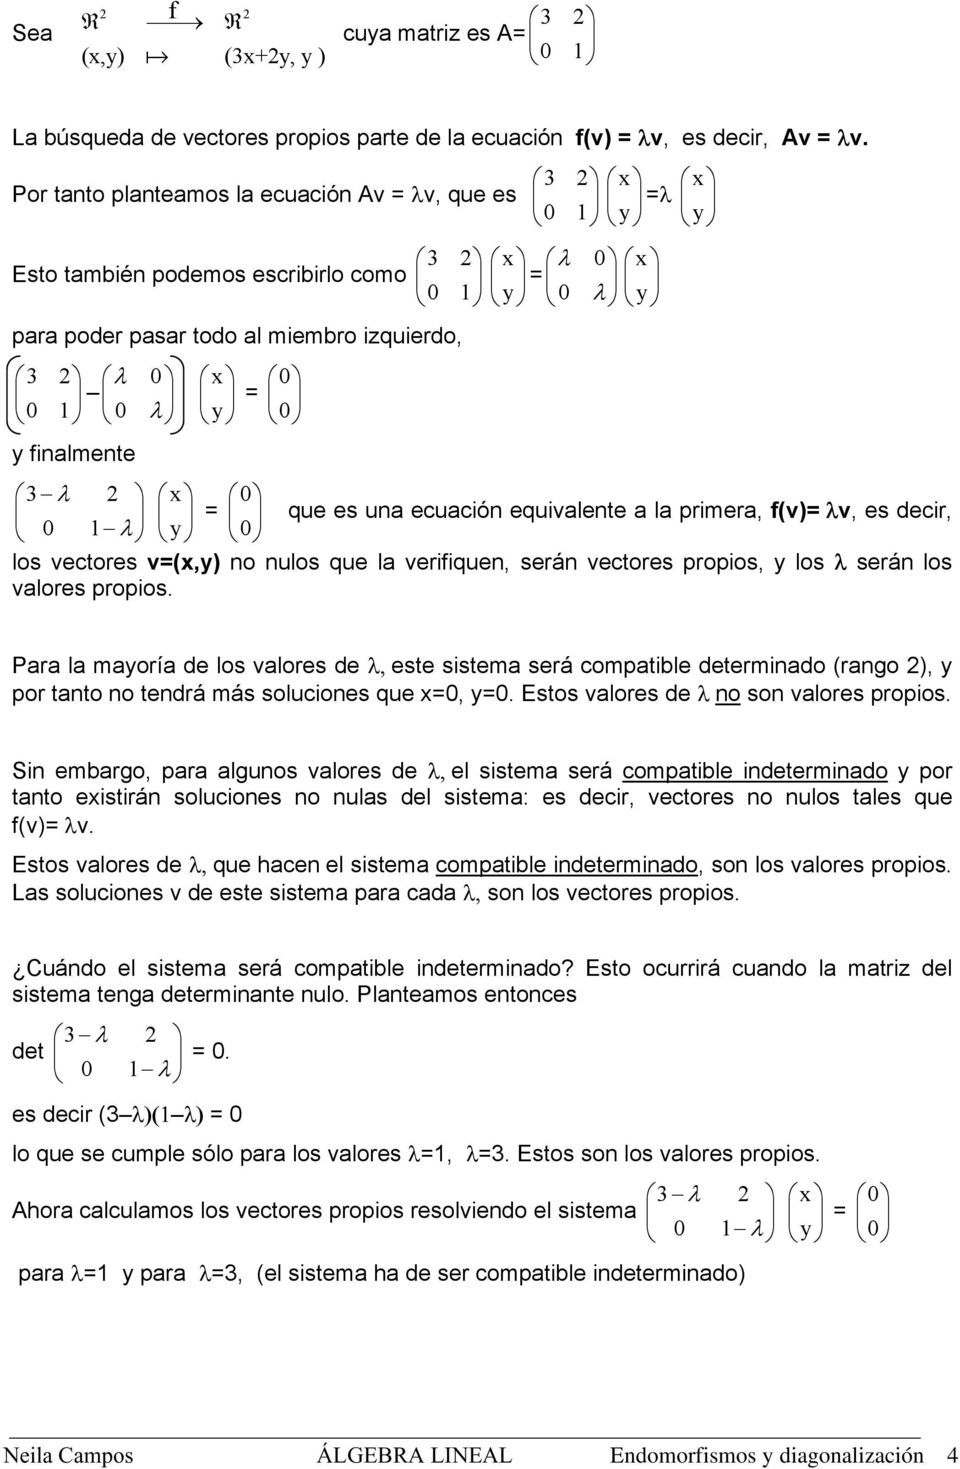 finalmente 0 x λ y 3 λ 2 x 0 = que es una ecuación equivalente a la primera, f(v)= λv, es decir, 0 1 λ y 0 los vectores v=(x,y) no nulos que la verifiquen, serán vectores propios, y los λ serán los